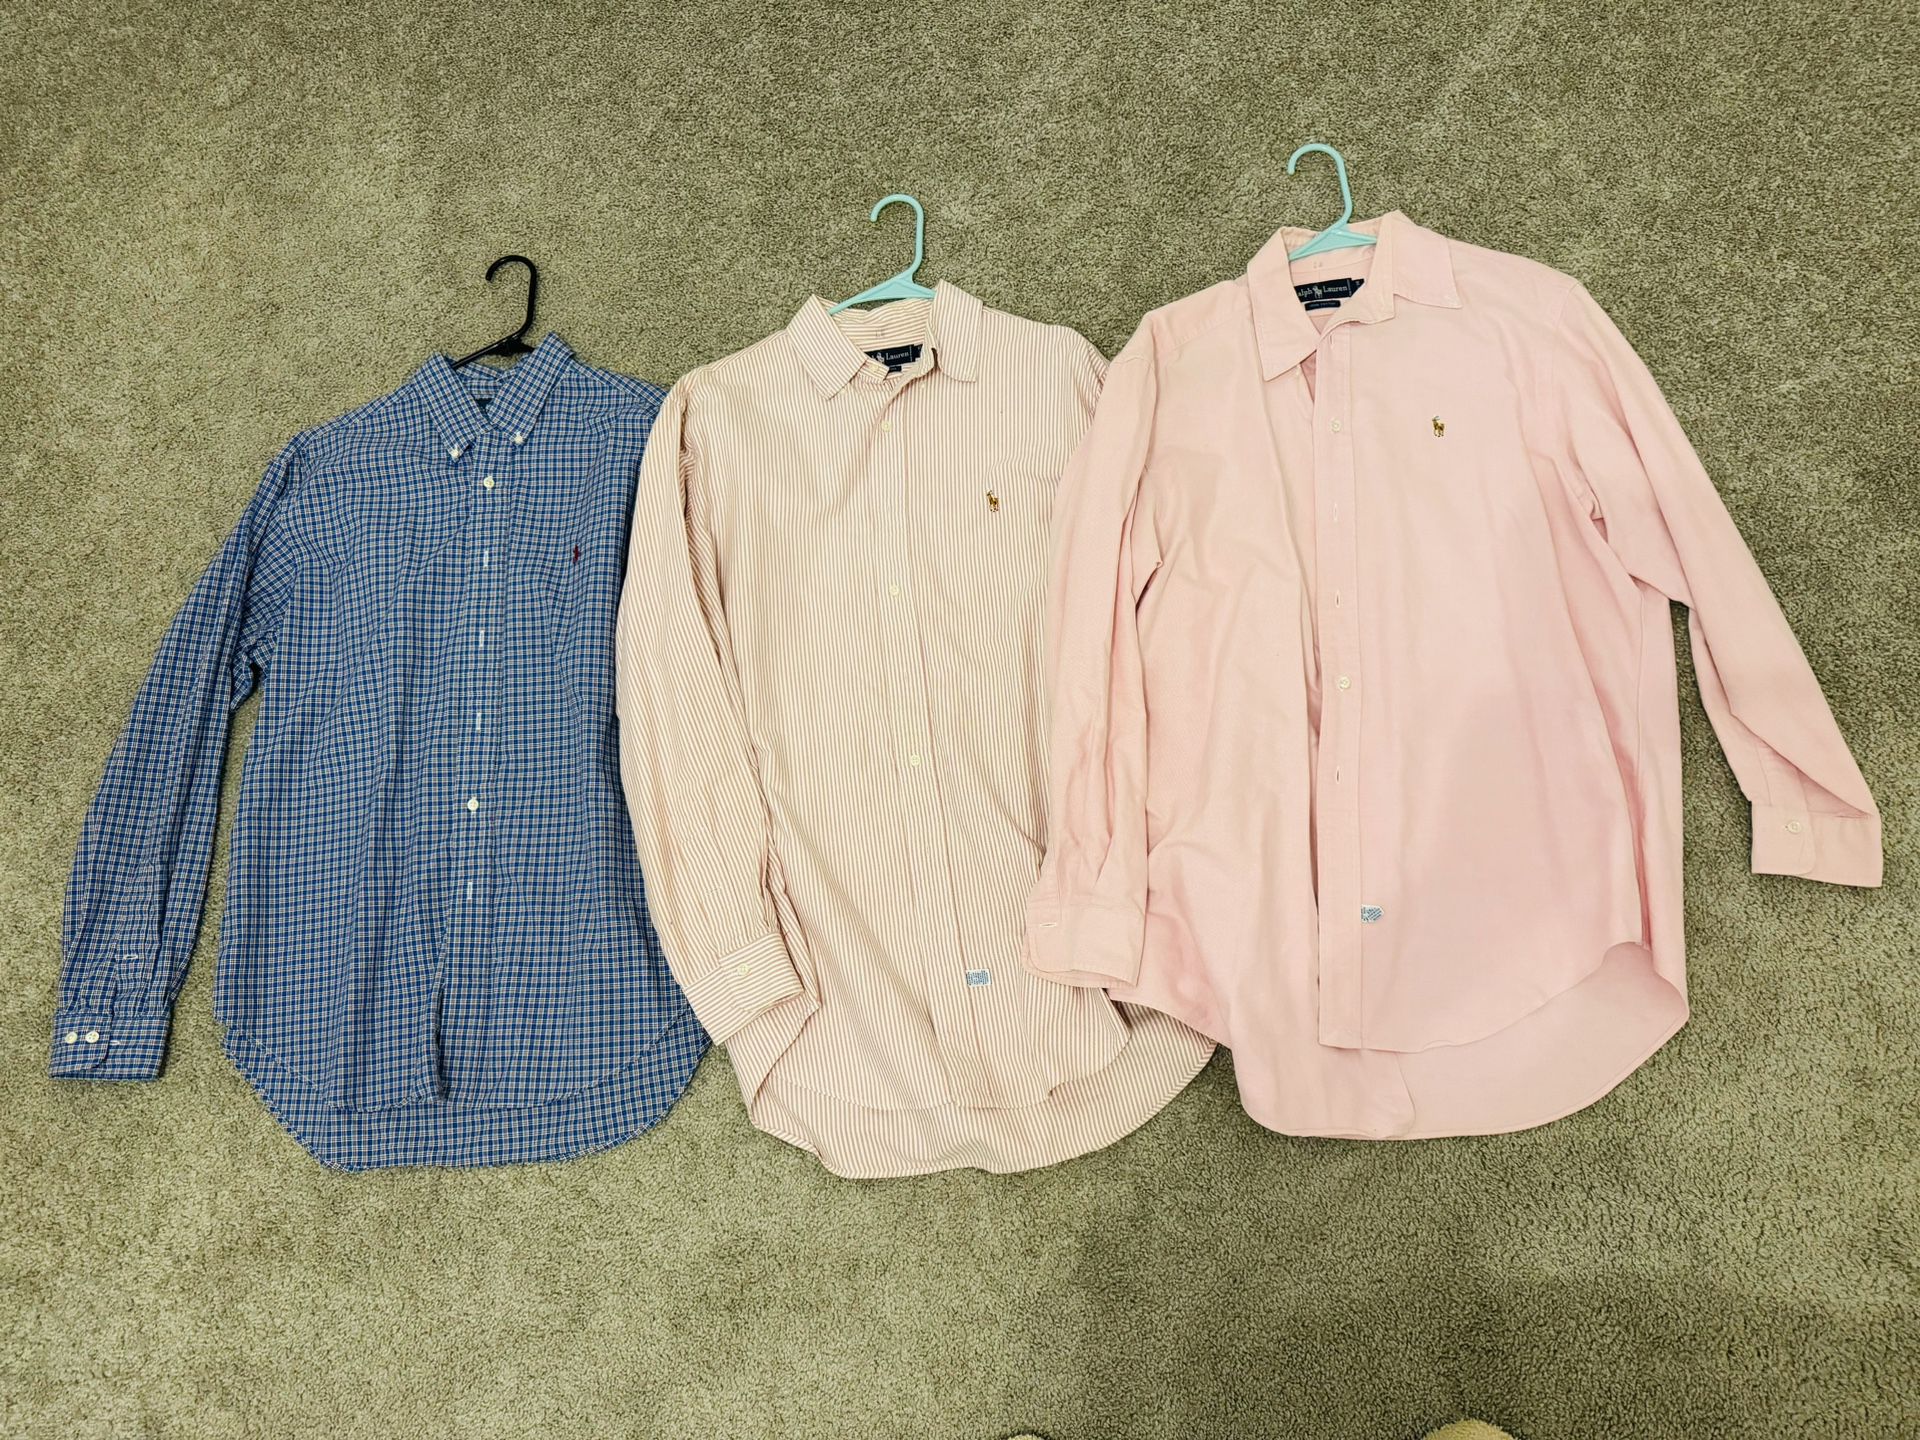 Men Classic Fit Oxford Button Shirts Bundle Size 16 1/2 34/35